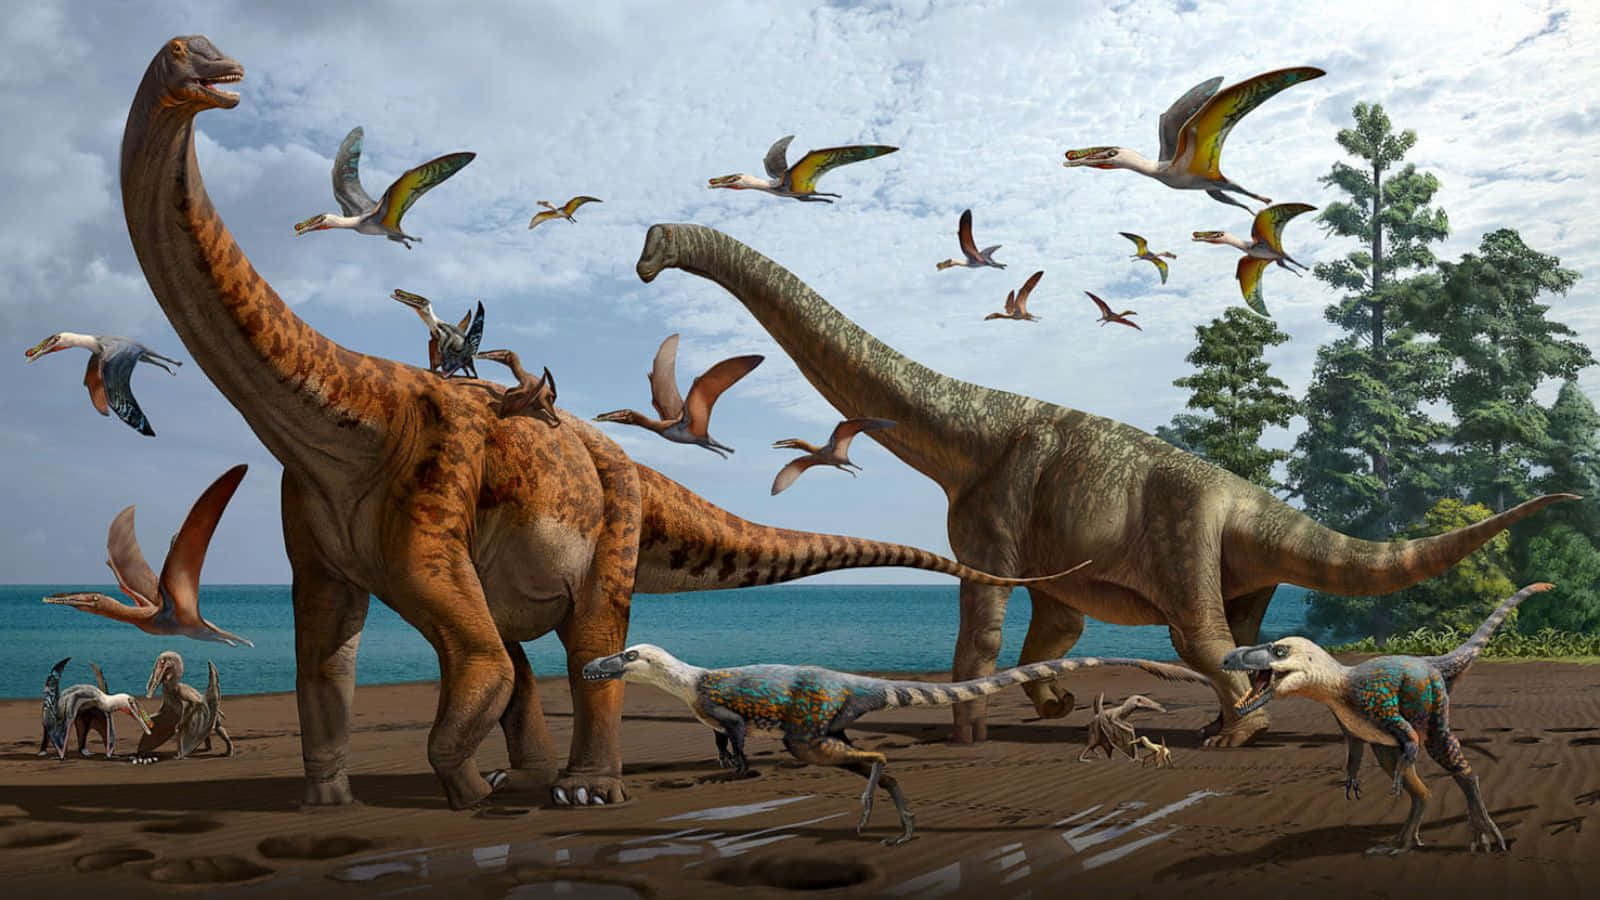 Imagende La Isla De Fantasía Con Dinosaurios Sauropoda